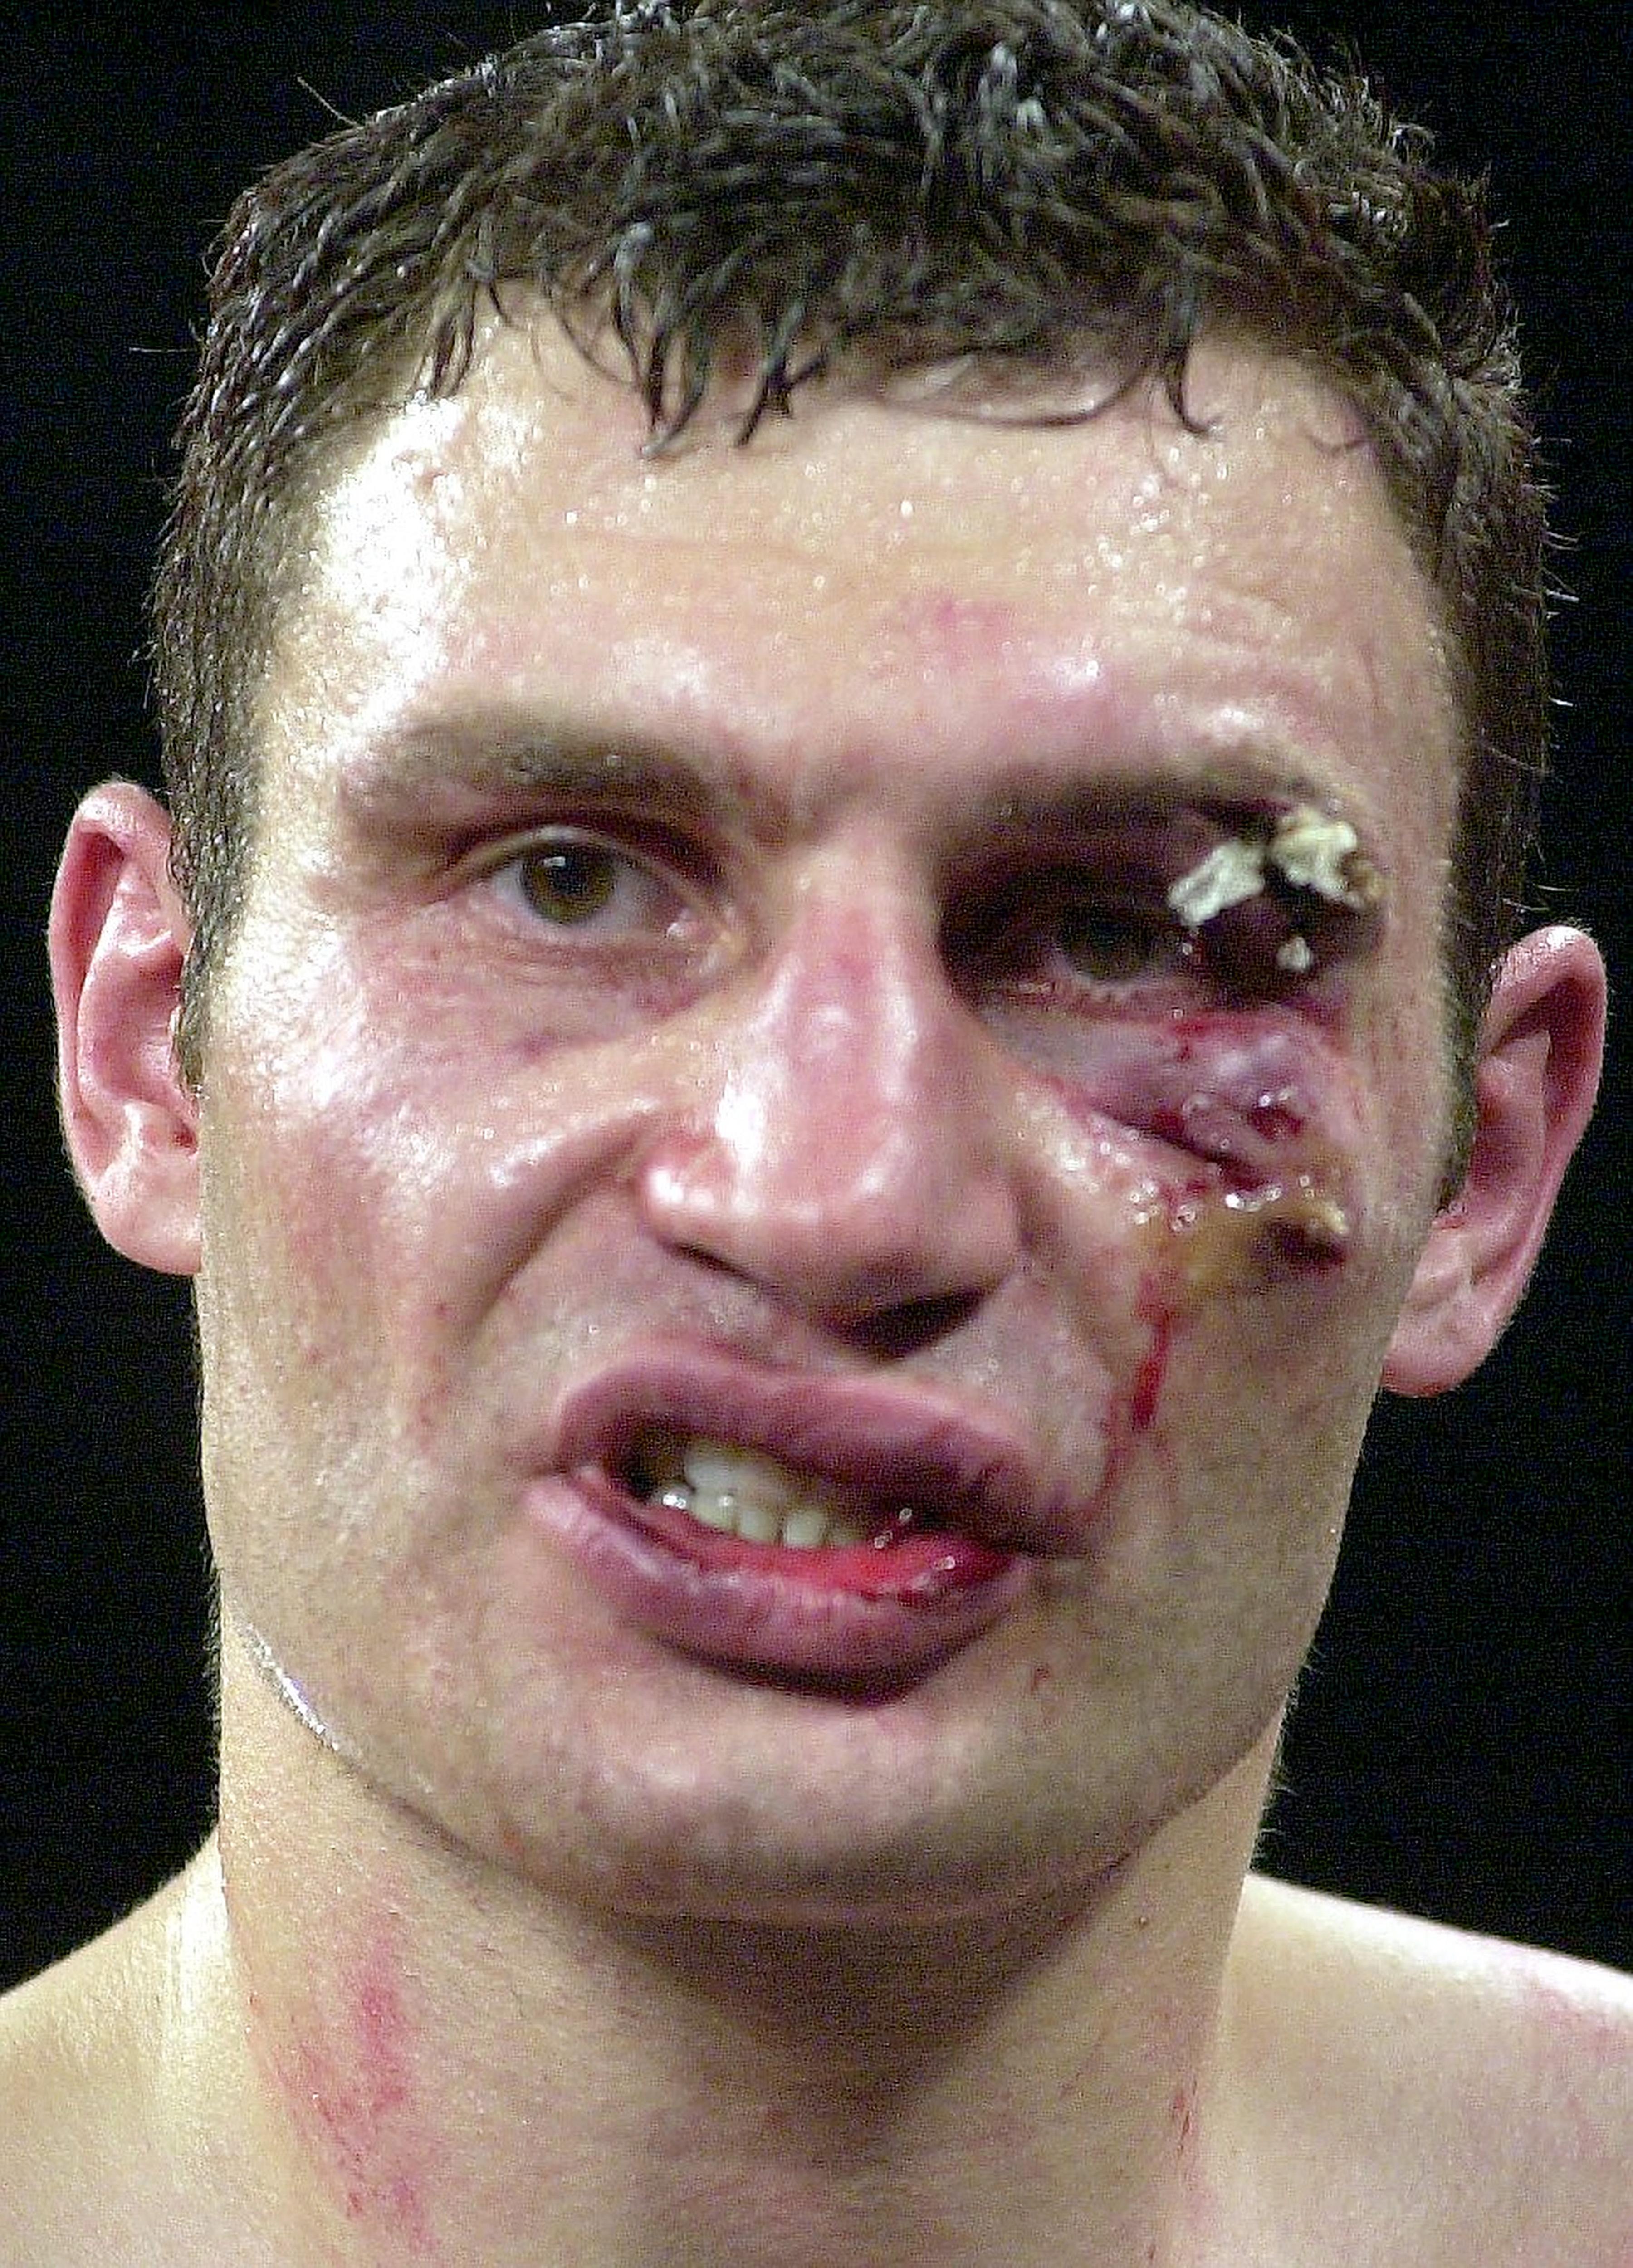 Кличко был вытащен доктором у ринга после того, как его глаз был разорван в клочья